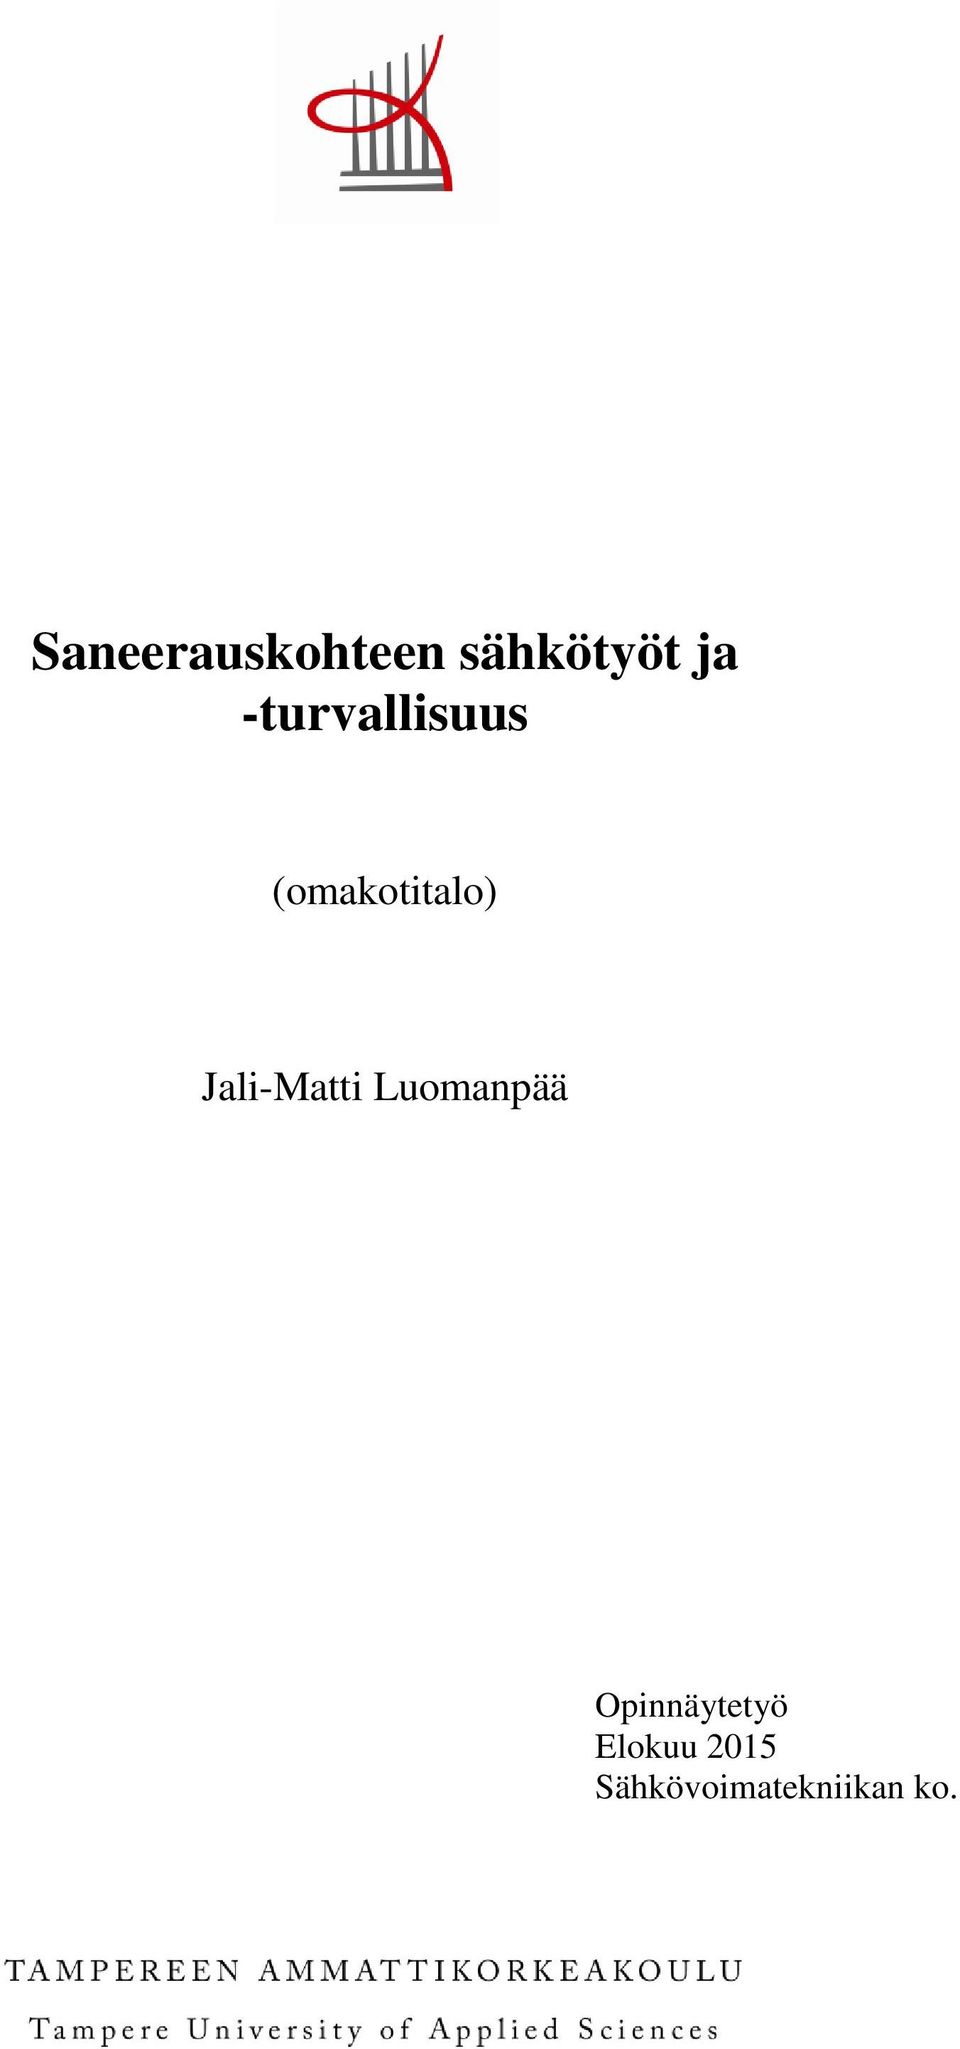 Jali-Matti Luomanpää